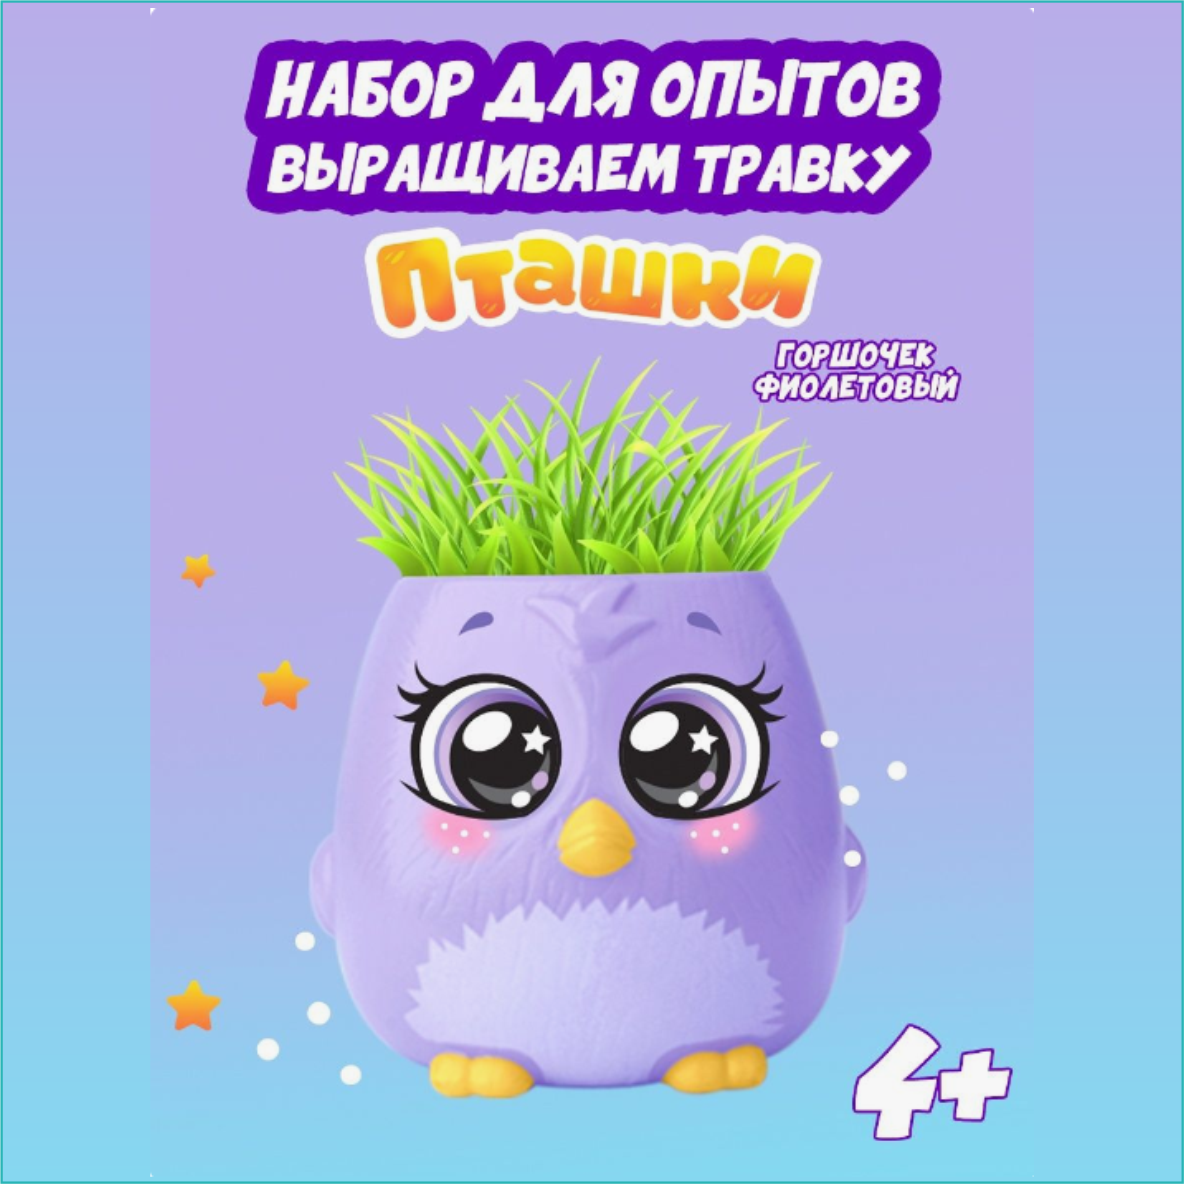 Набор для опытов "Пташки" (Выращиваем траву) Фиолетовый